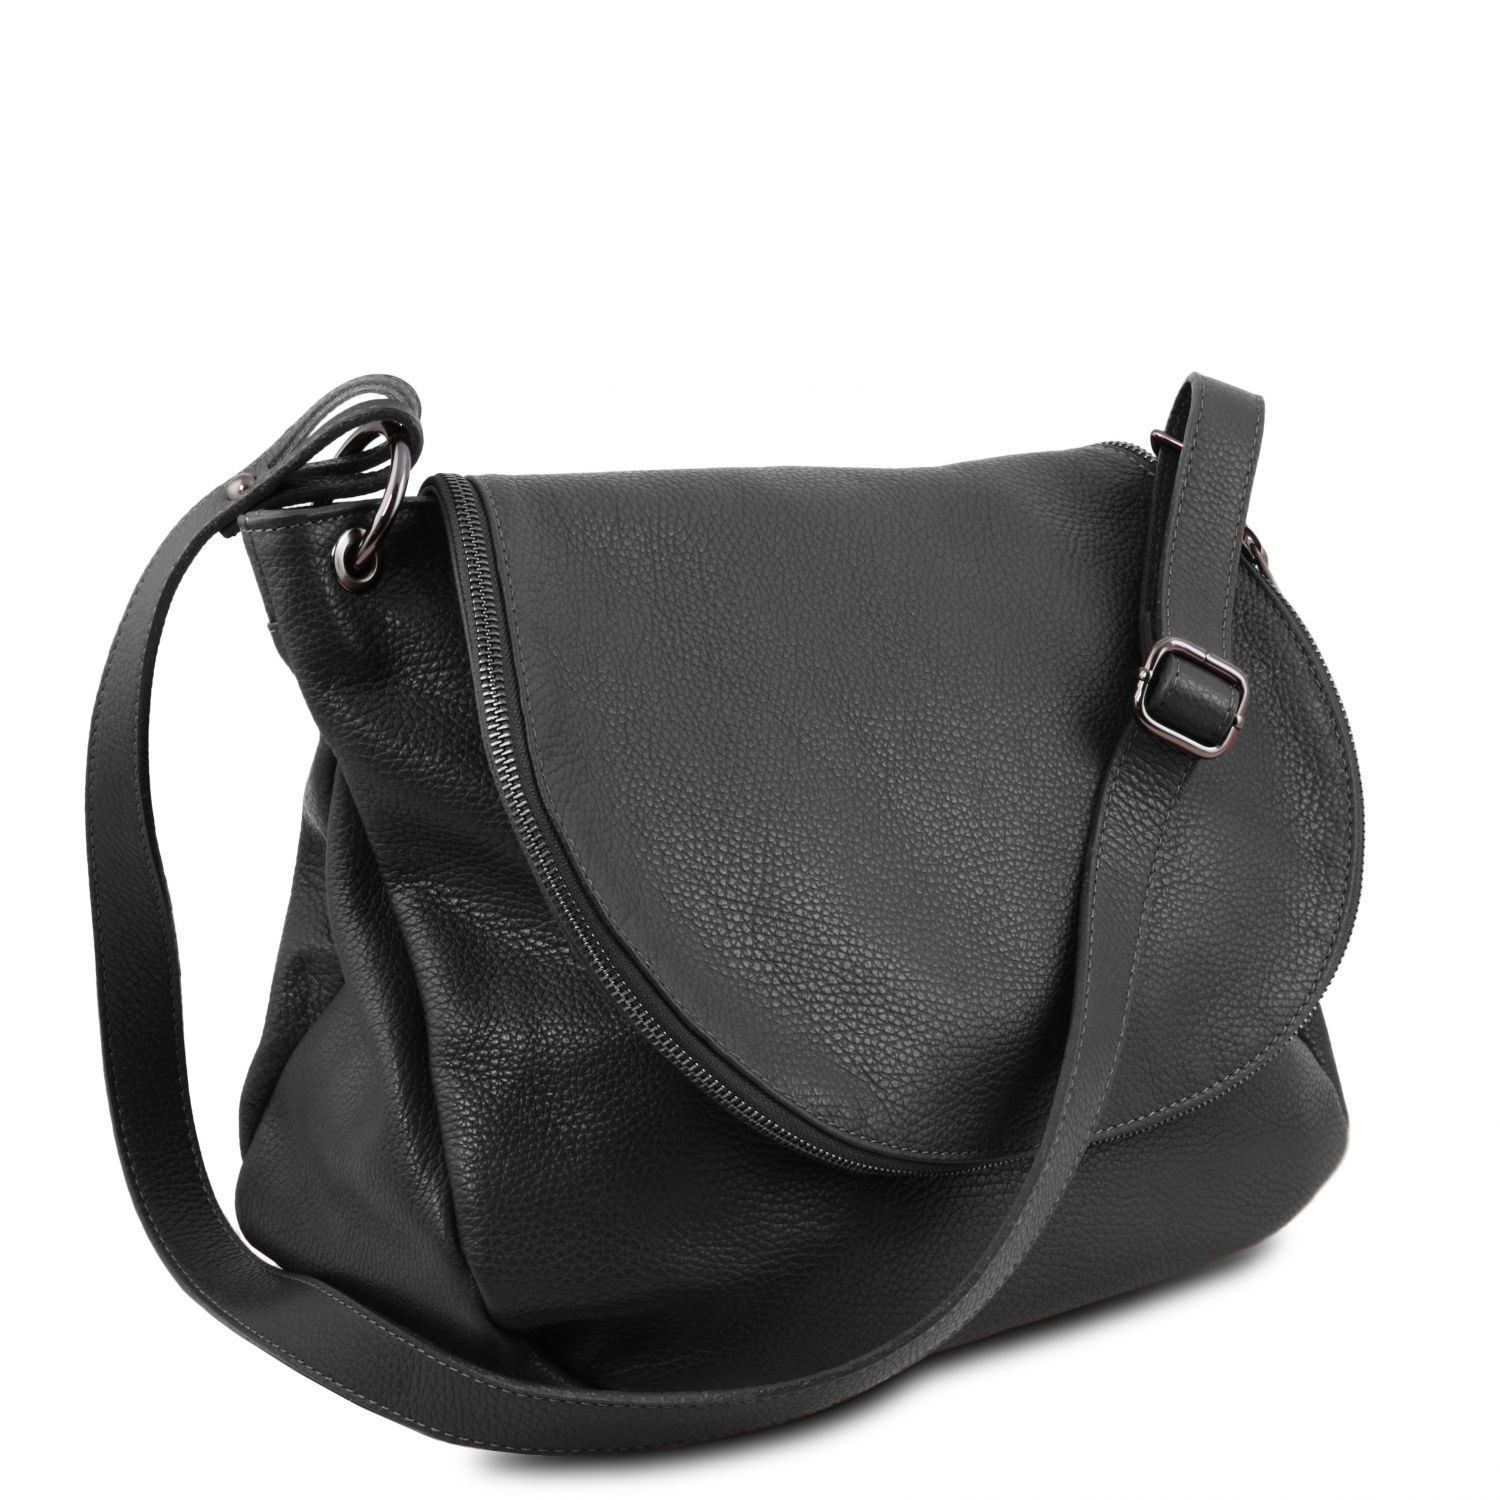 Tl Bag Soft Leather Shoulder Bag With Tassel Detail Black Tl141802 